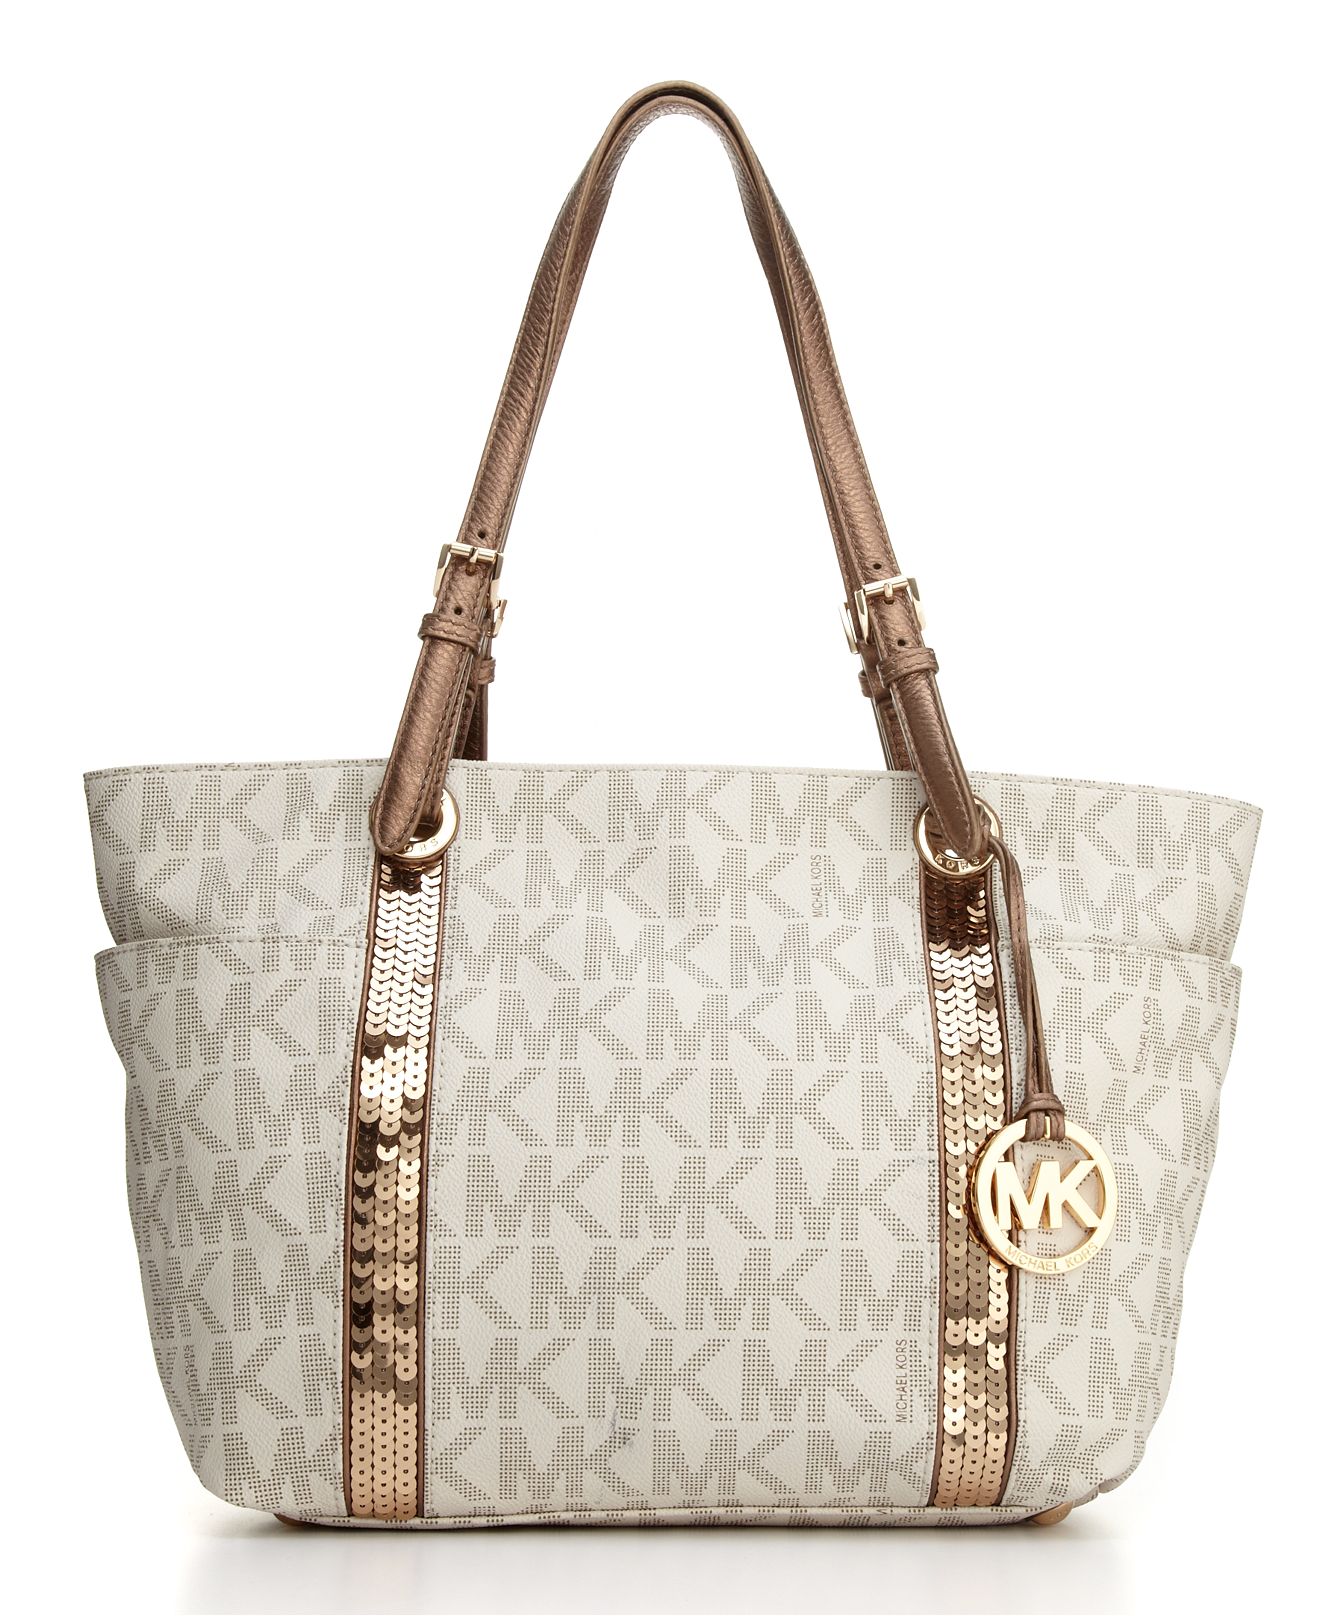 Michael Kors Macys Handbags | NAR Media Kit